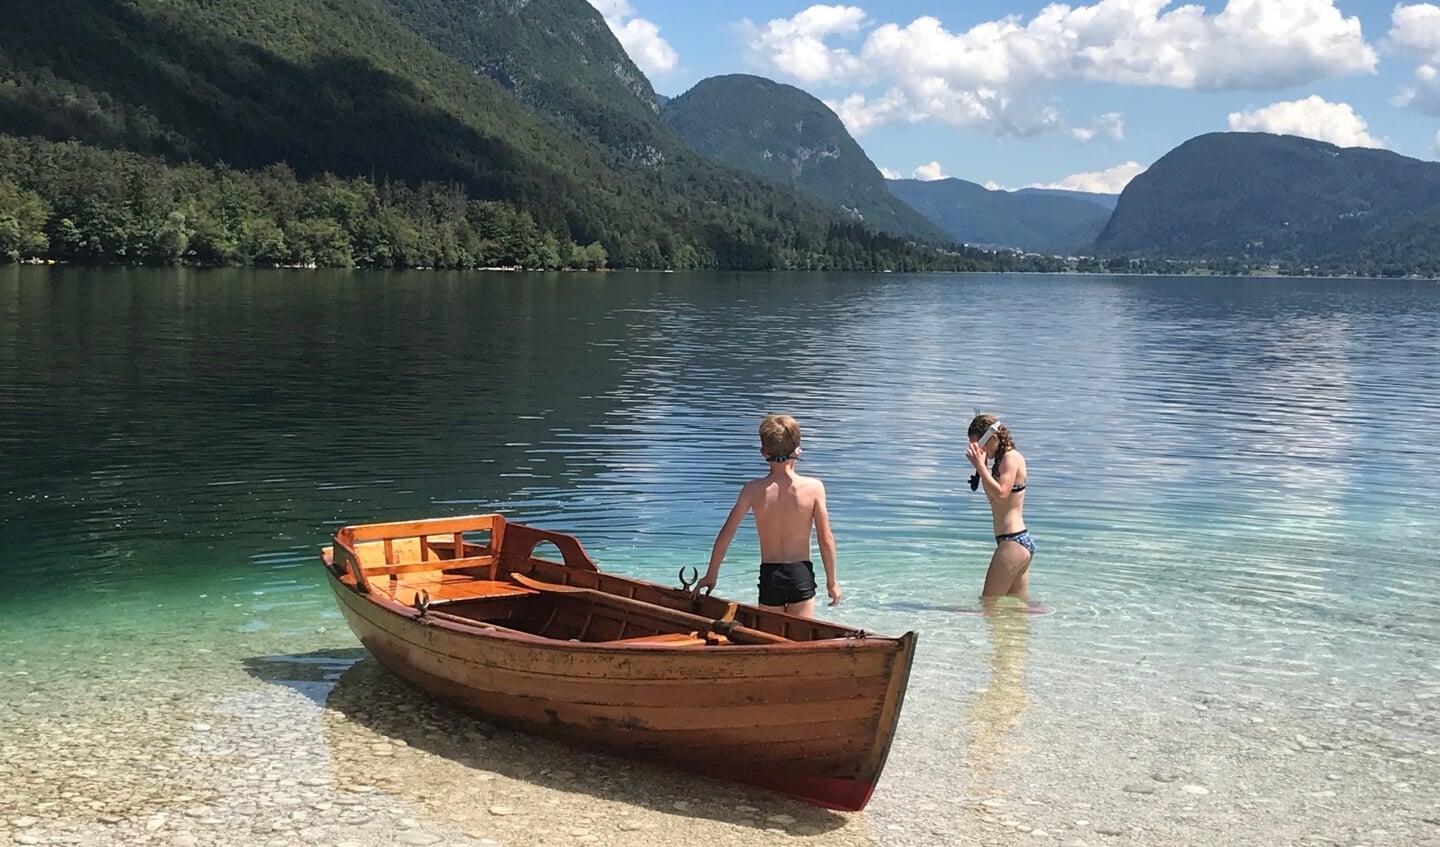 'Deze foto is gemaakt in Slovenië bij het meer van Bohinj op 27 juli. Dit jaar zochten we de rustige plekken op en met de boot kwamen we terecht op een verlaten strandje. Op de foto zijn onze kinderen de vele vissen onder water aan het bekijken.'